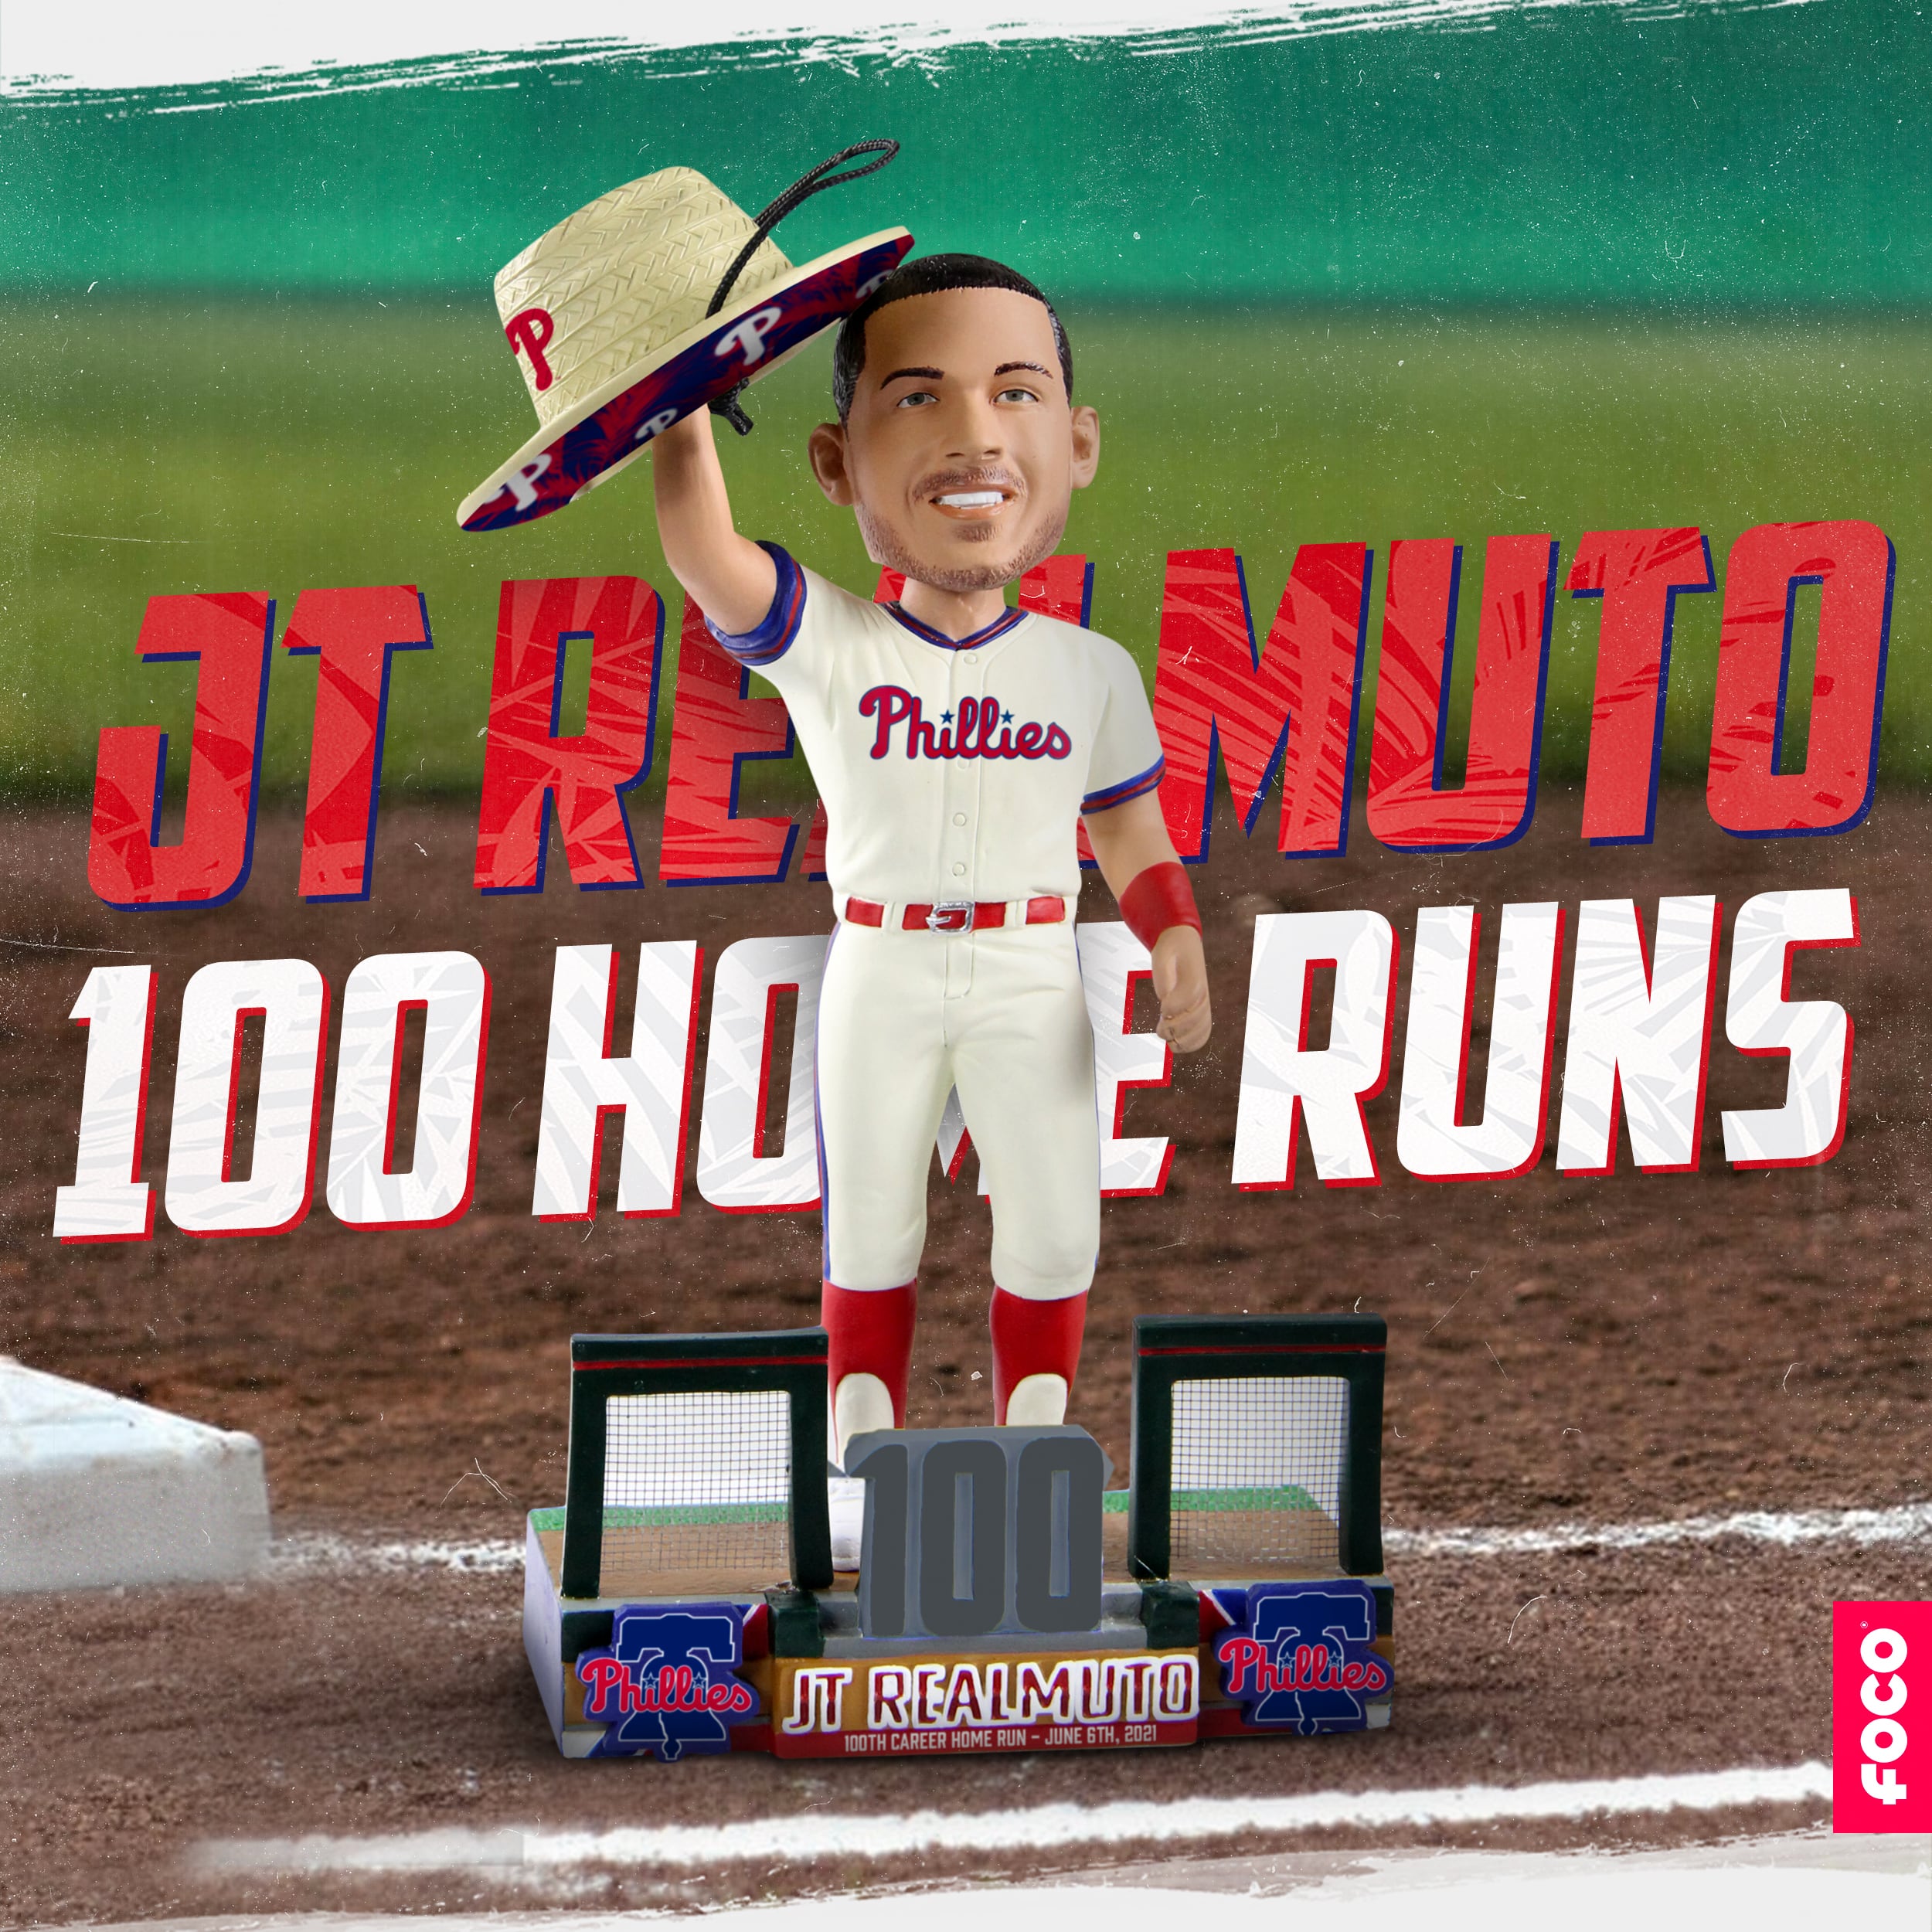 JT Realmuto (Philadelphia Phillies) Hero Series MLB Bobblehead by